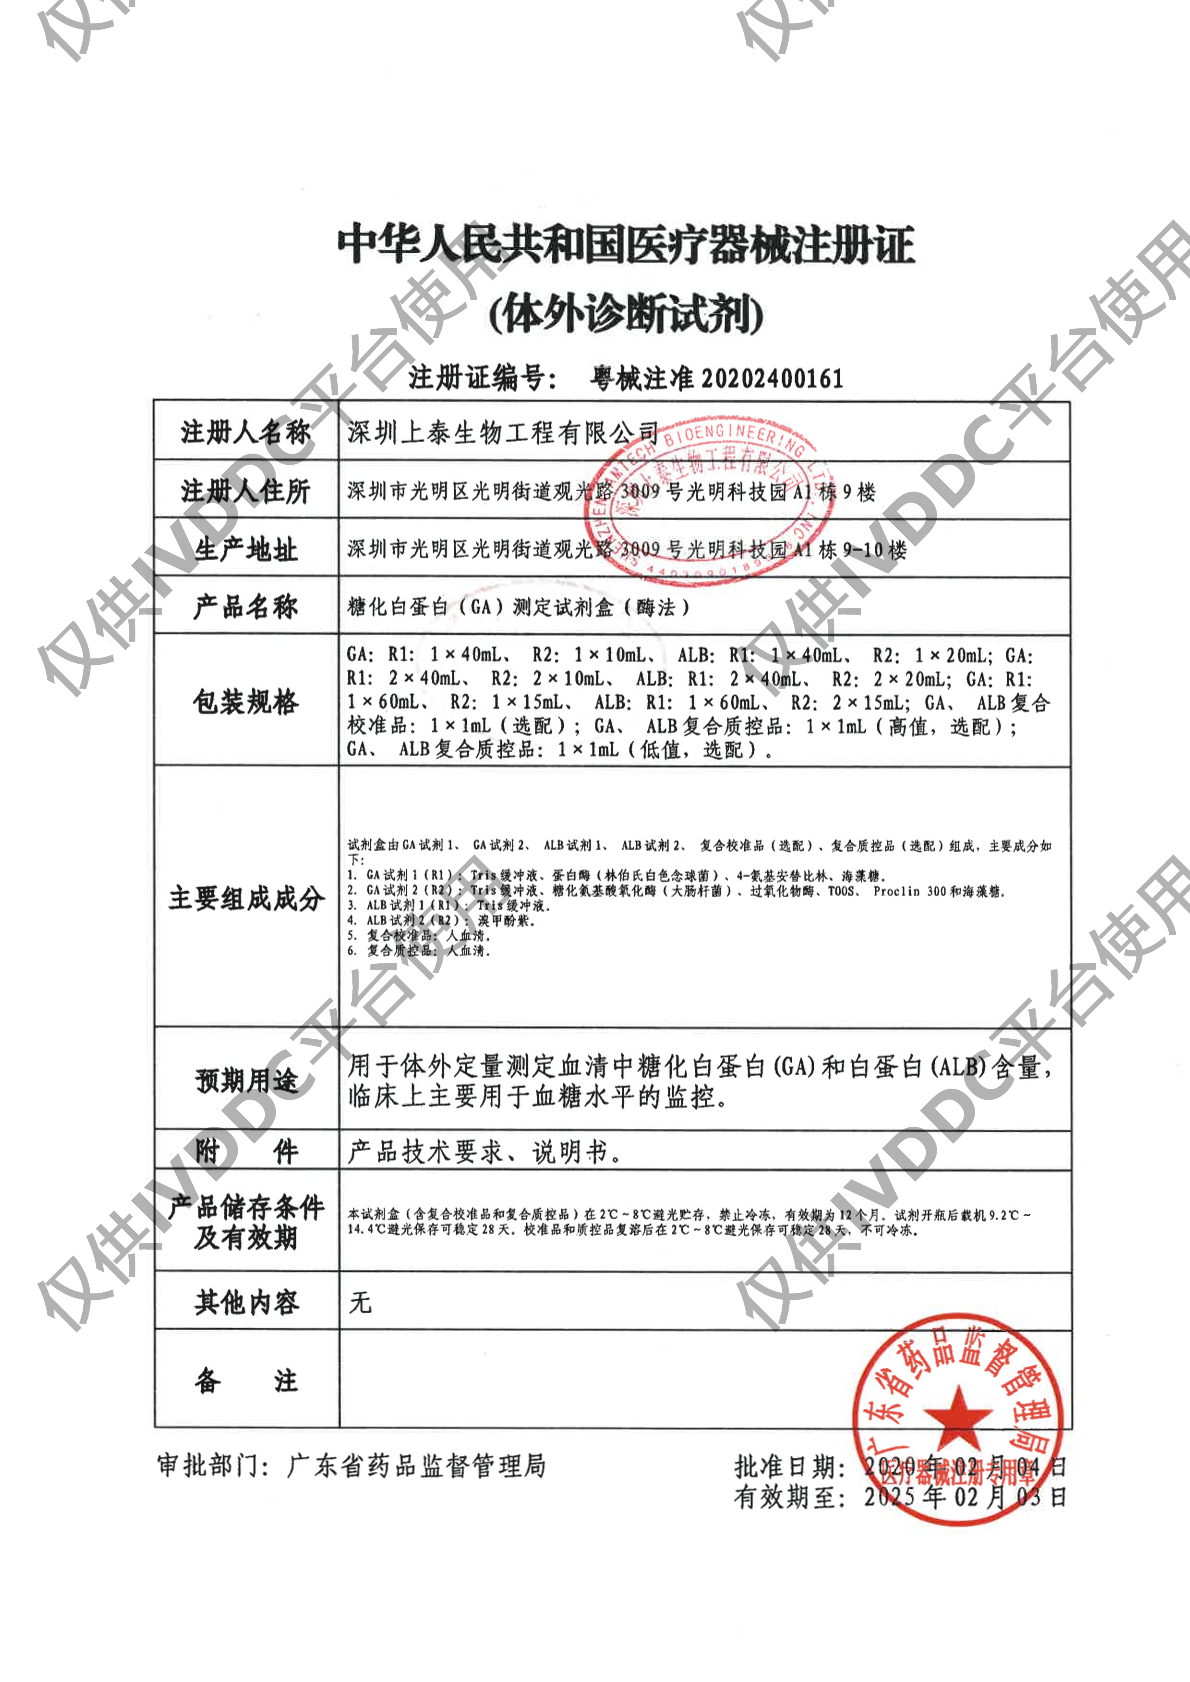 【深圳上泰】糖化白蛋白(GA)测定试剂盒(酶法)注册证